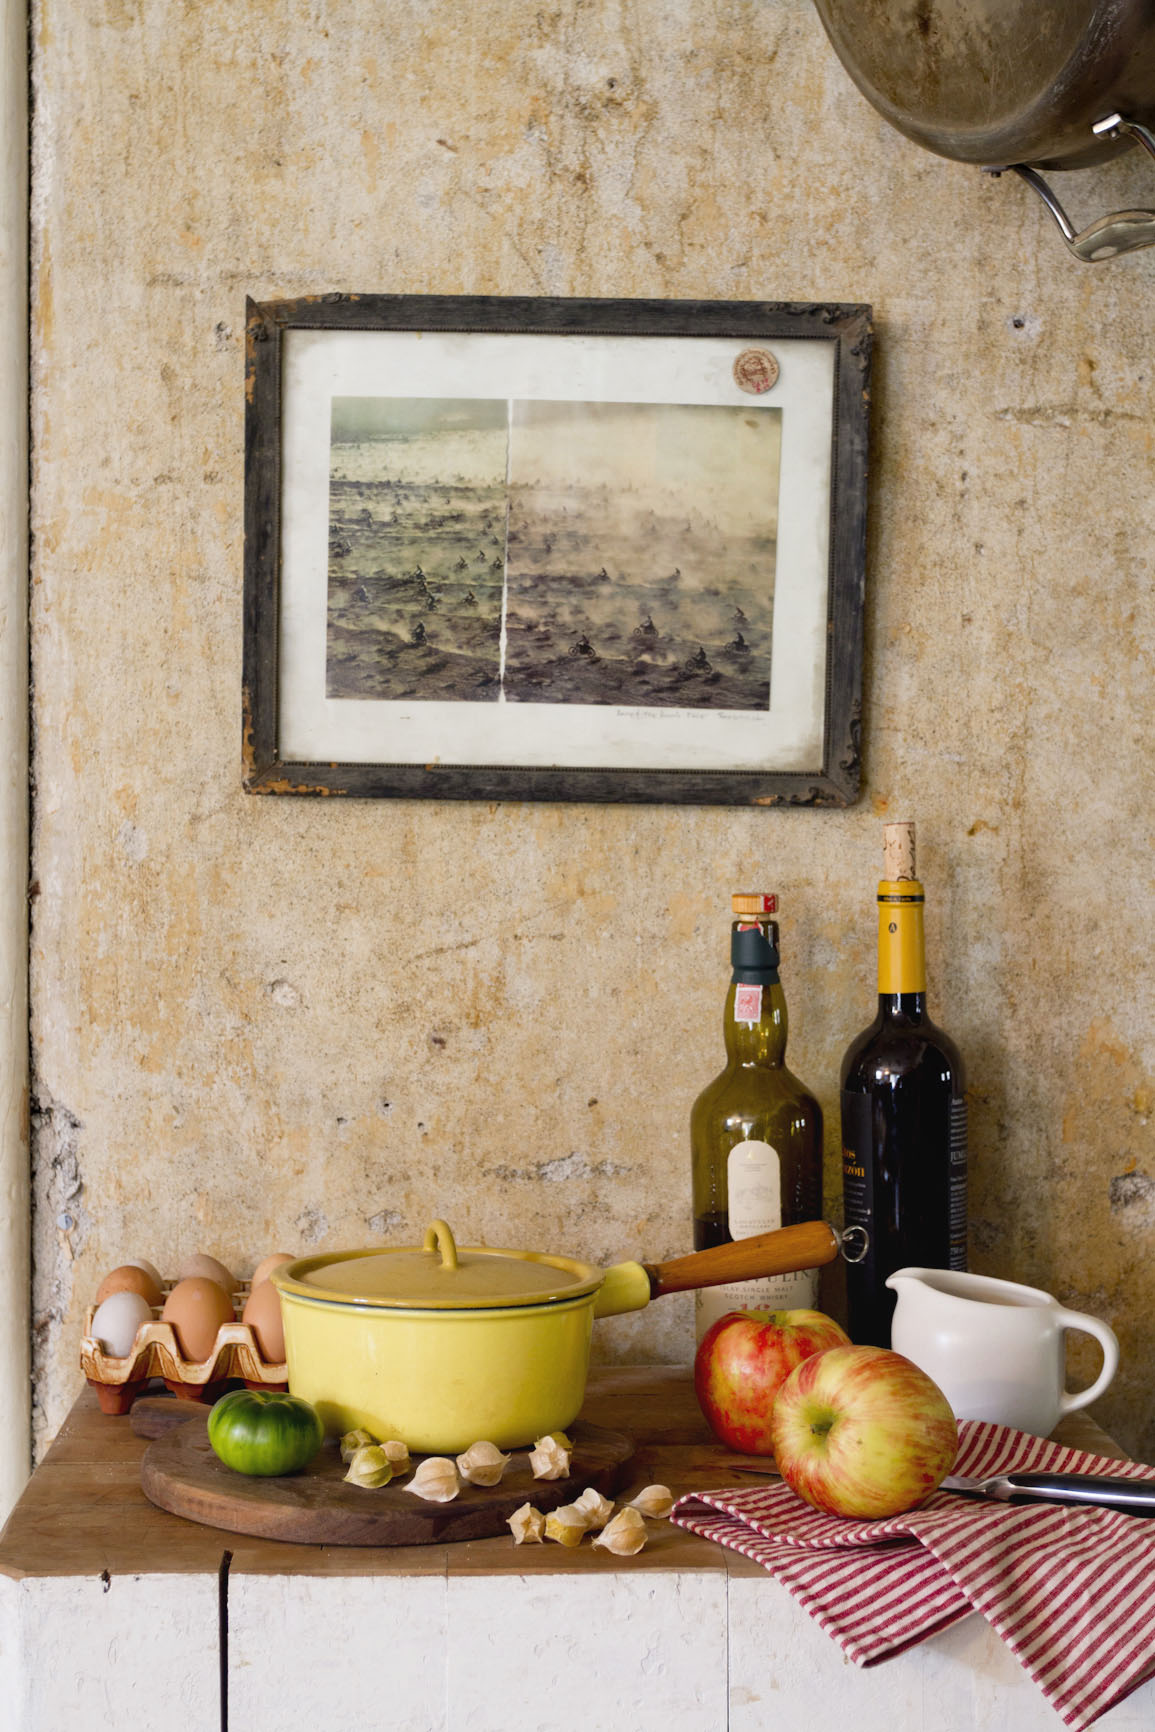 kitchen-lifestyle-still-life-autumn-rustic.jpg